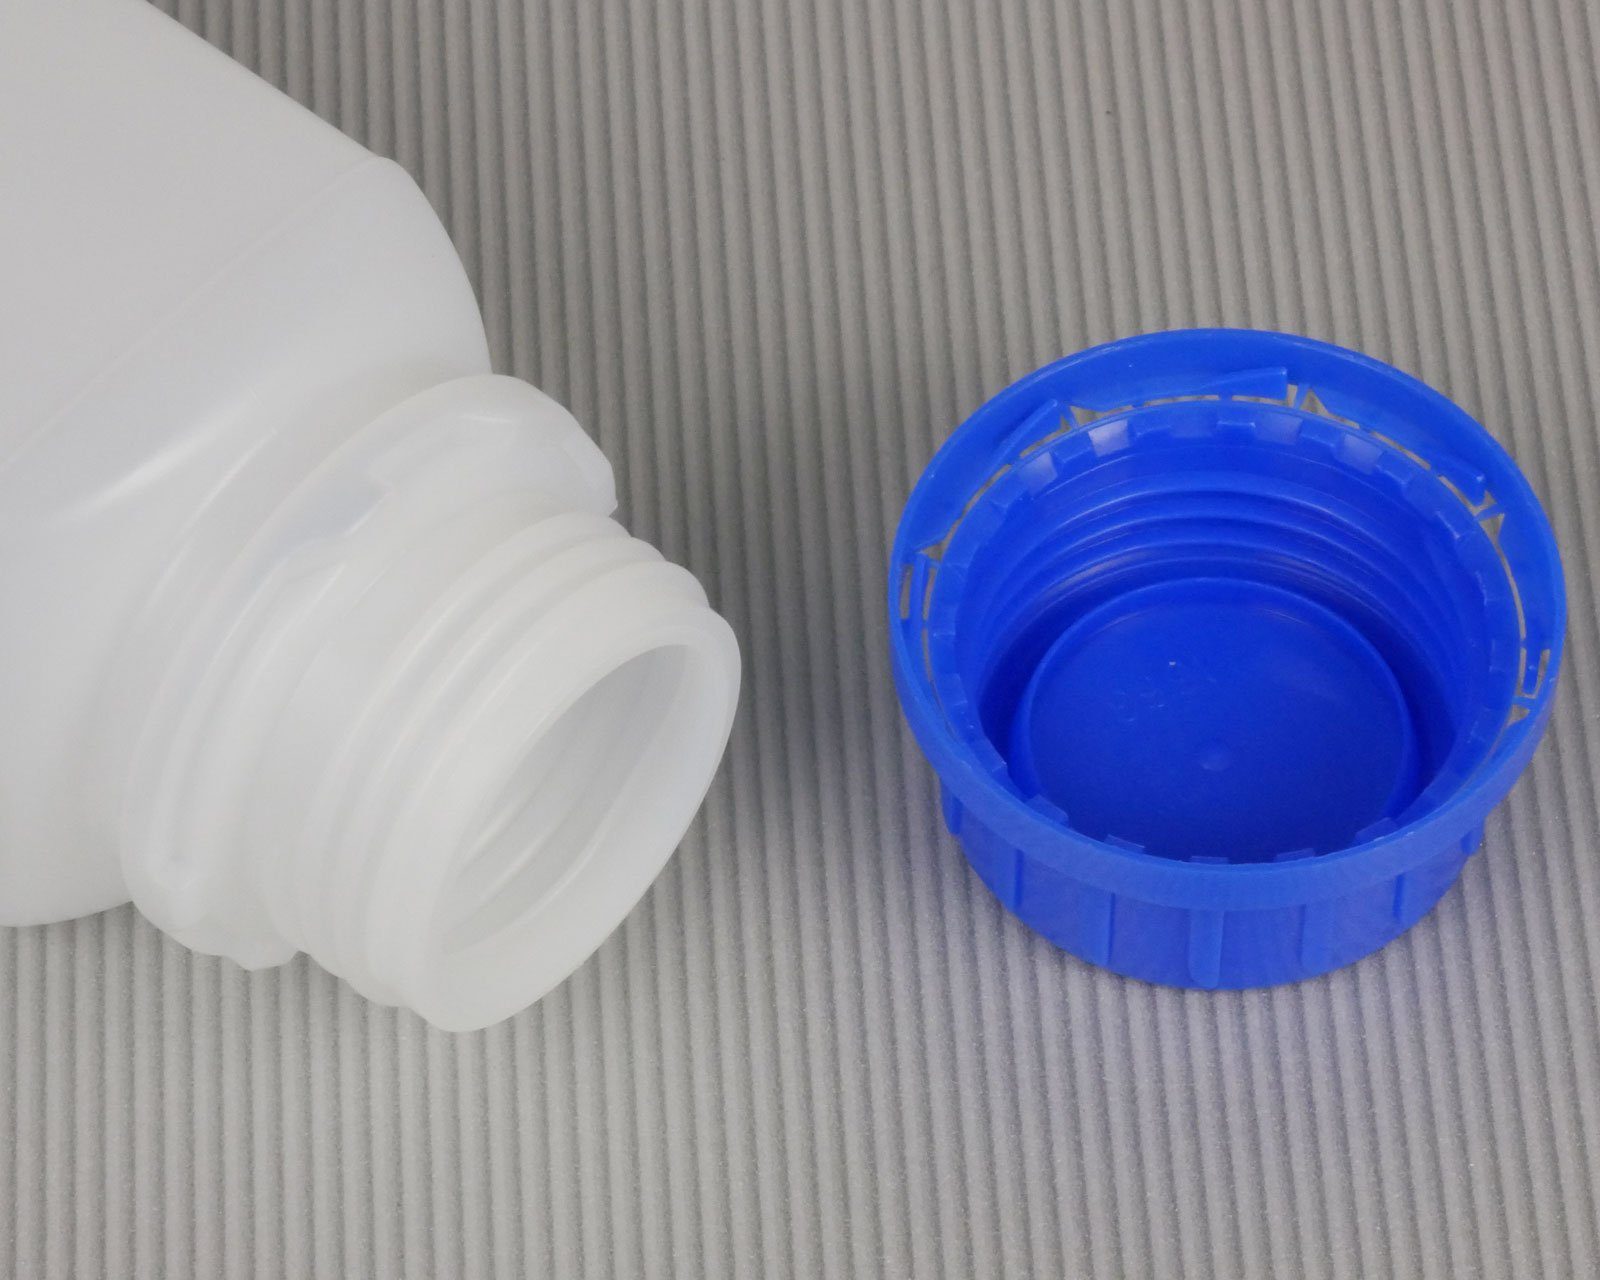 OCTOPUS Kanister 250 ml Deckel, 45 vierkant, mit blauem St) Weithals-Flasche G naturfarben, (250